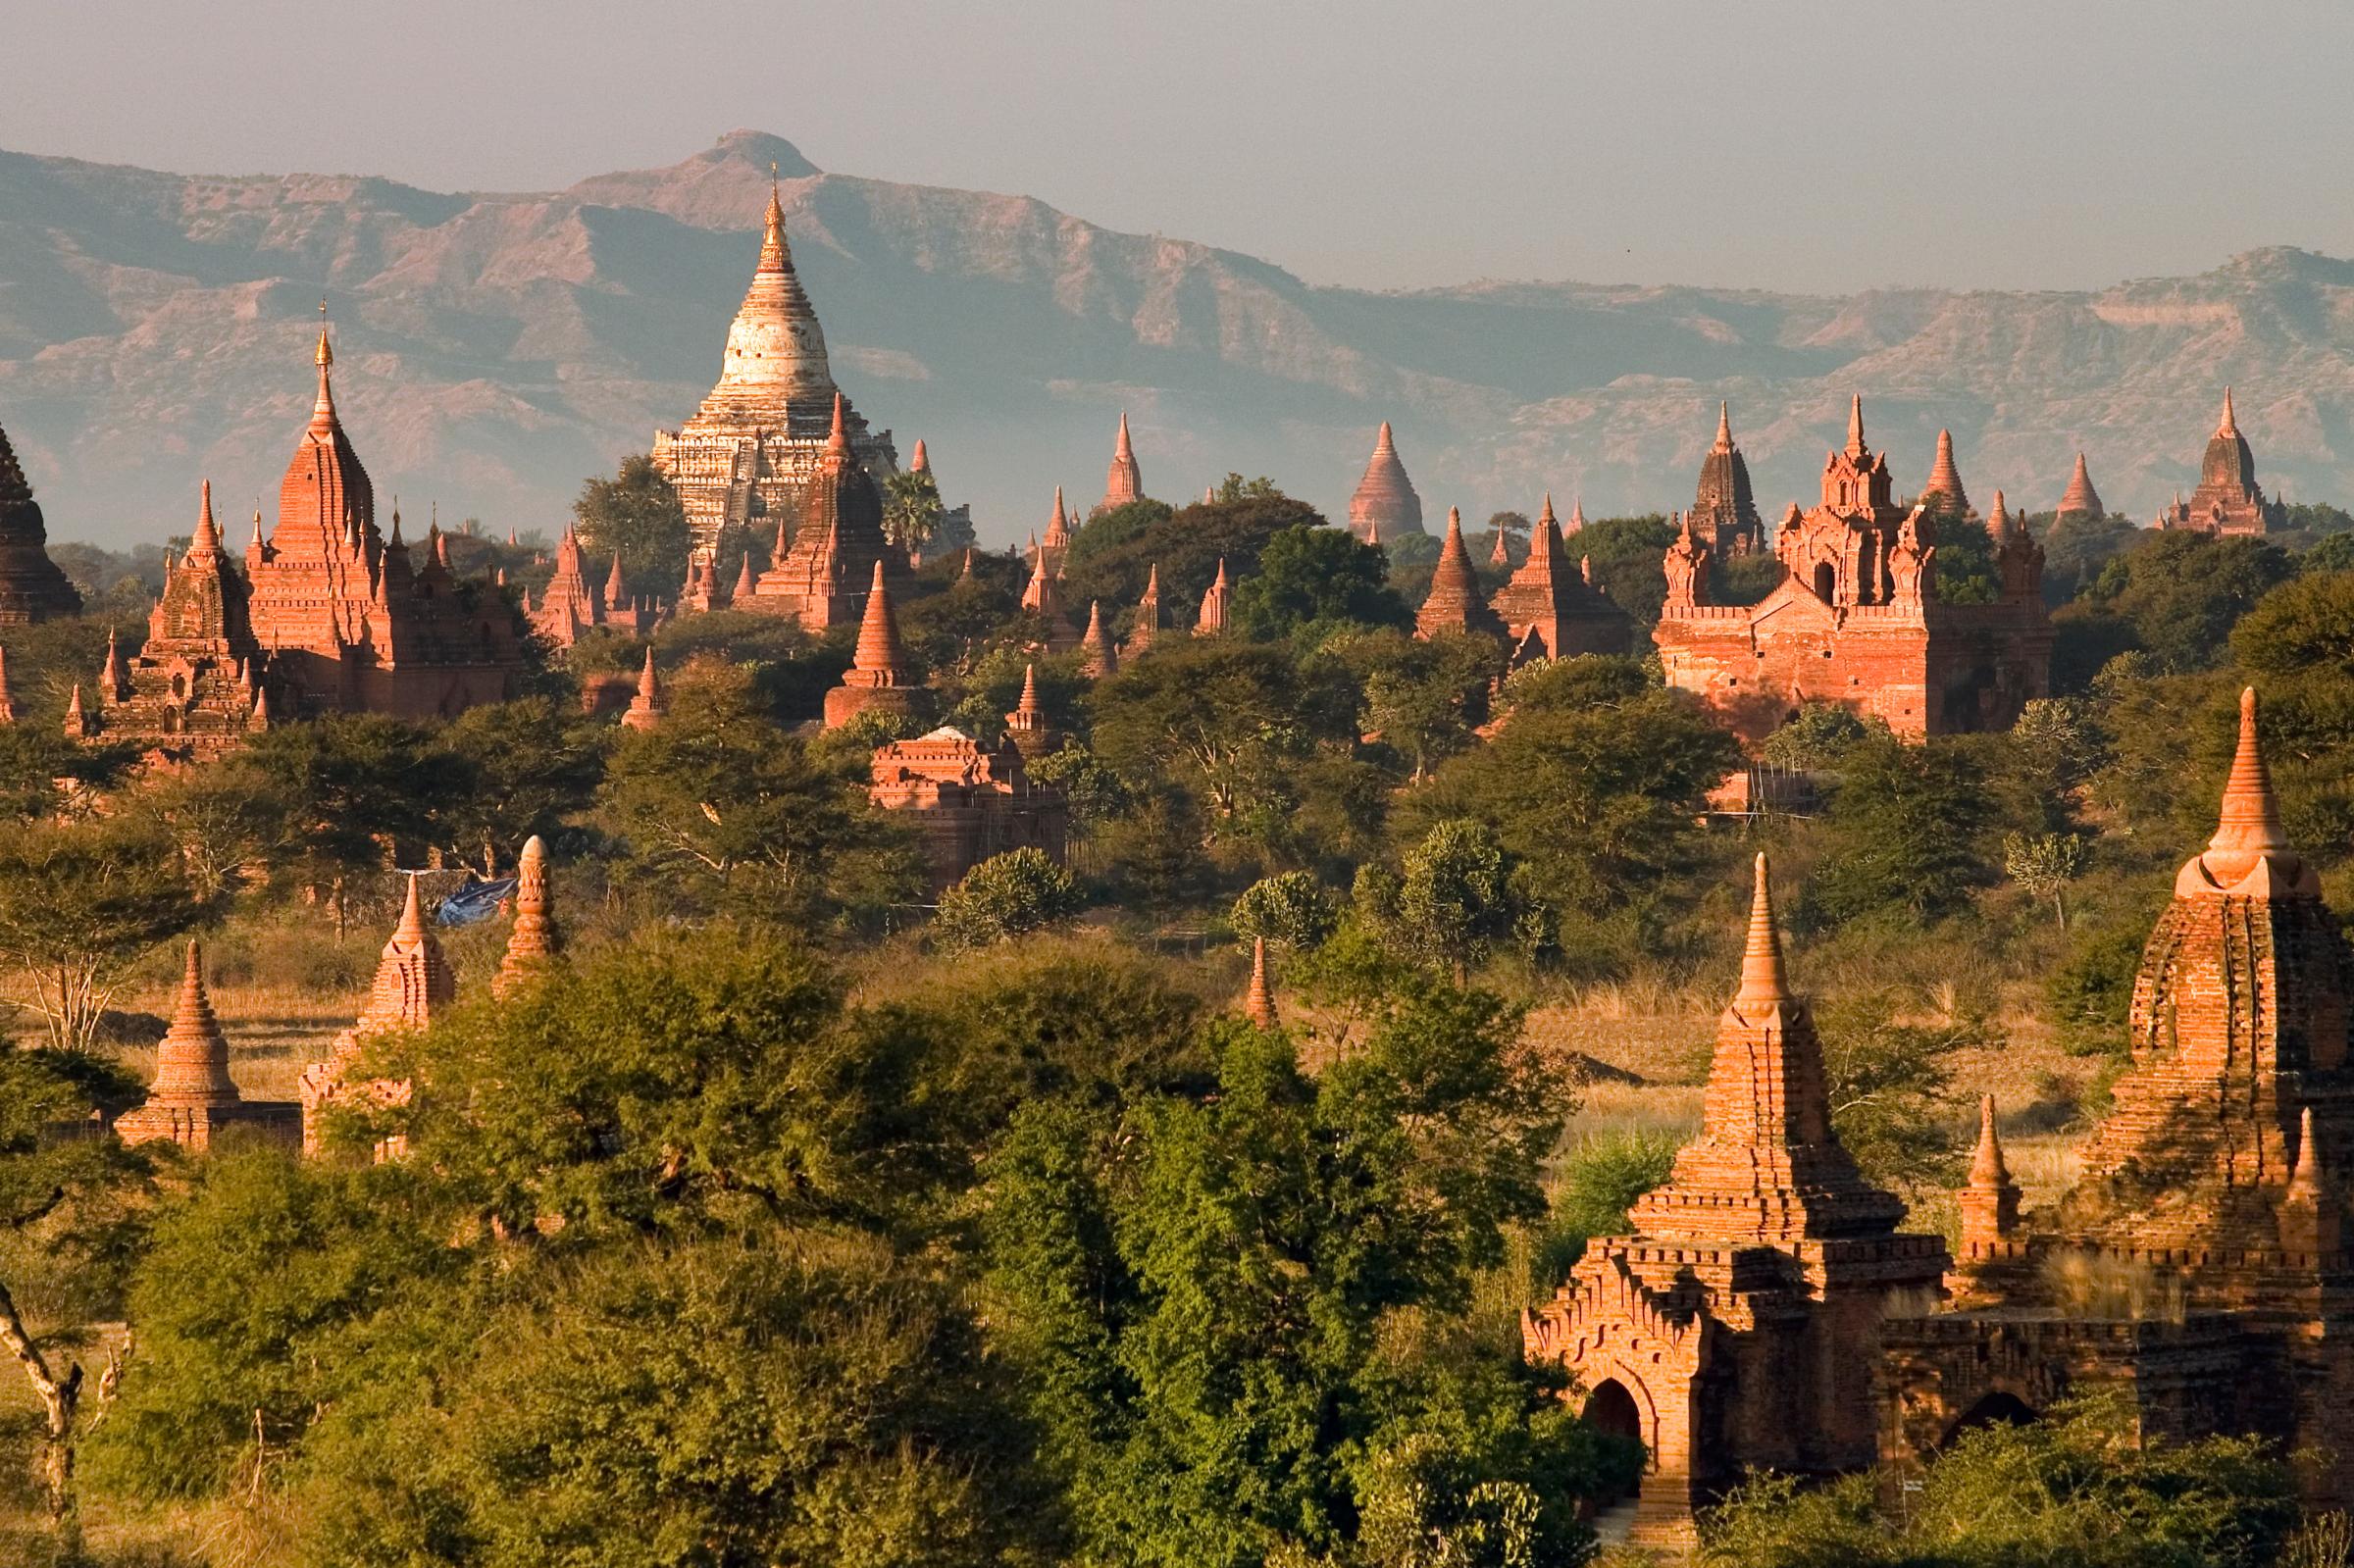 The Skyline of Bagan, Myanmar